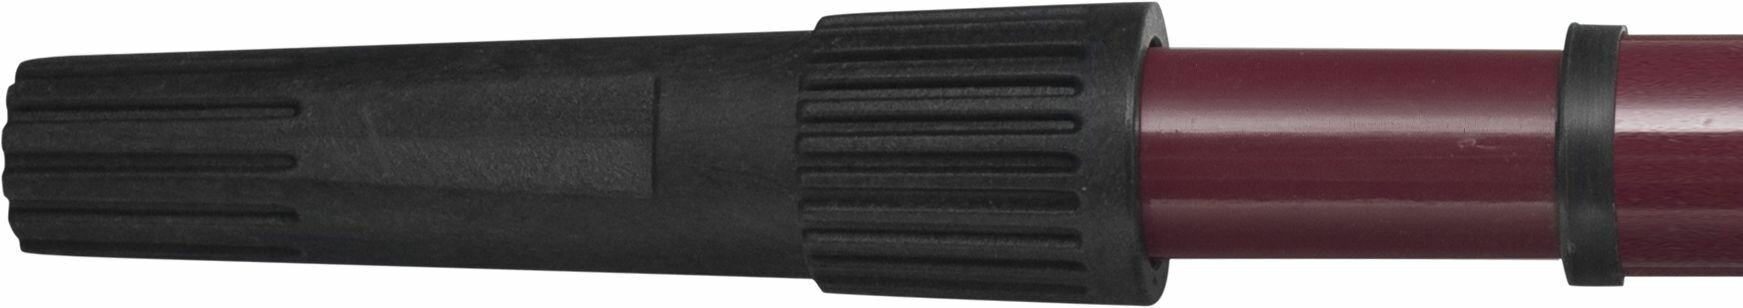 Ручка телескопическая металлическая 1 0-2 м Matrix